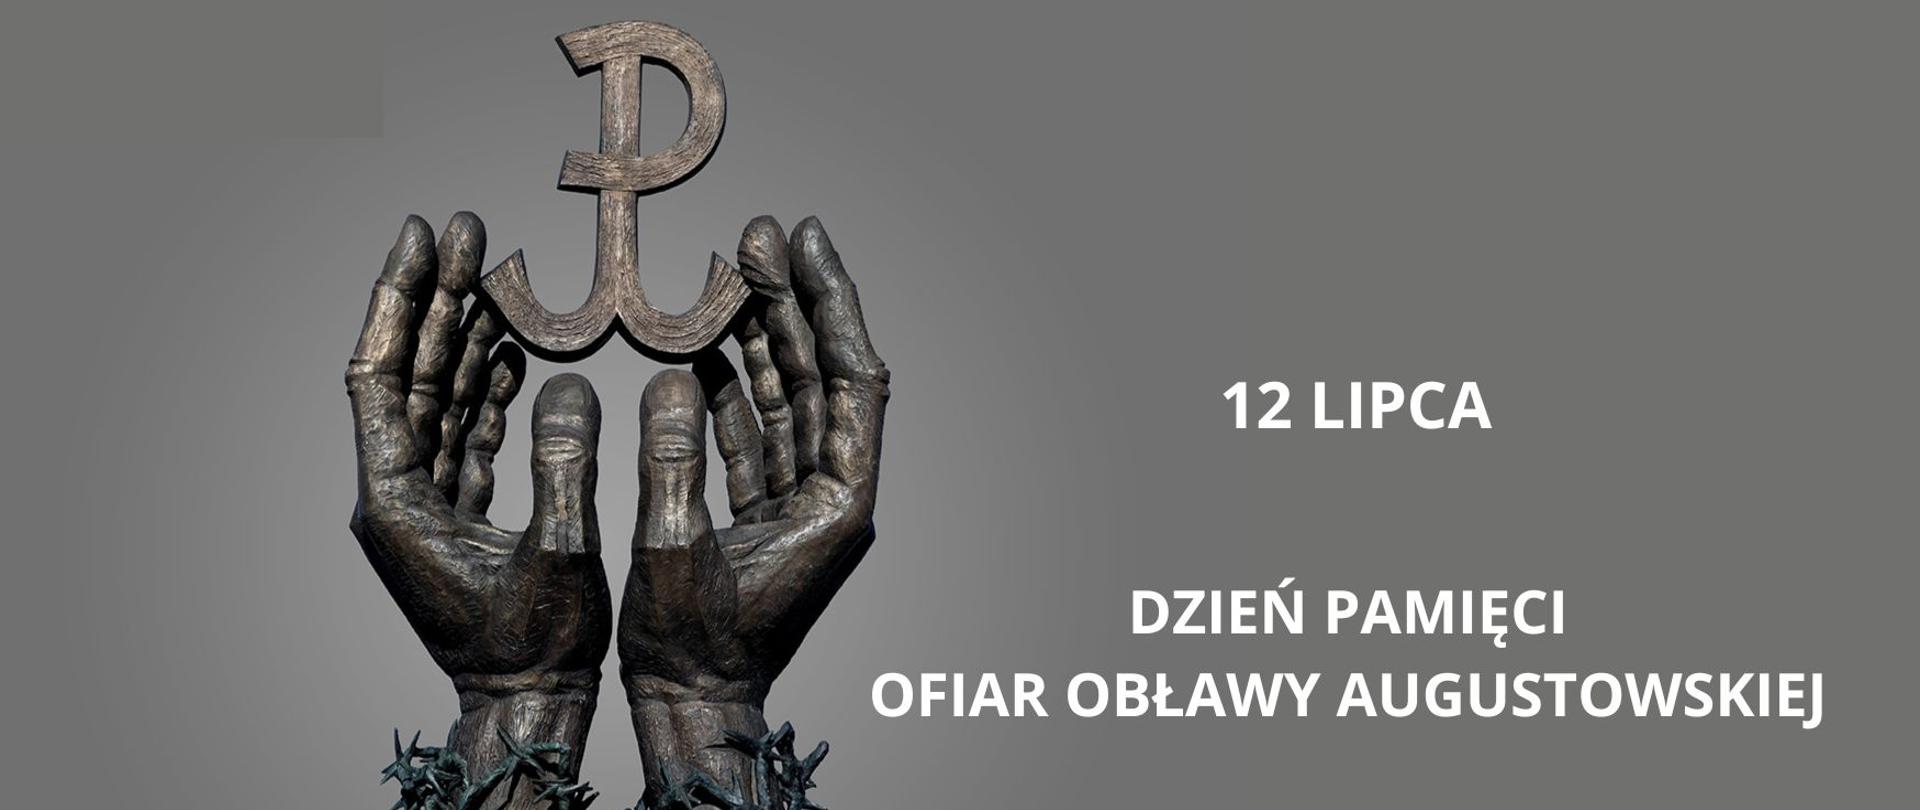 Dzień Pamięci Ofiar Obławy Augustowskiej 